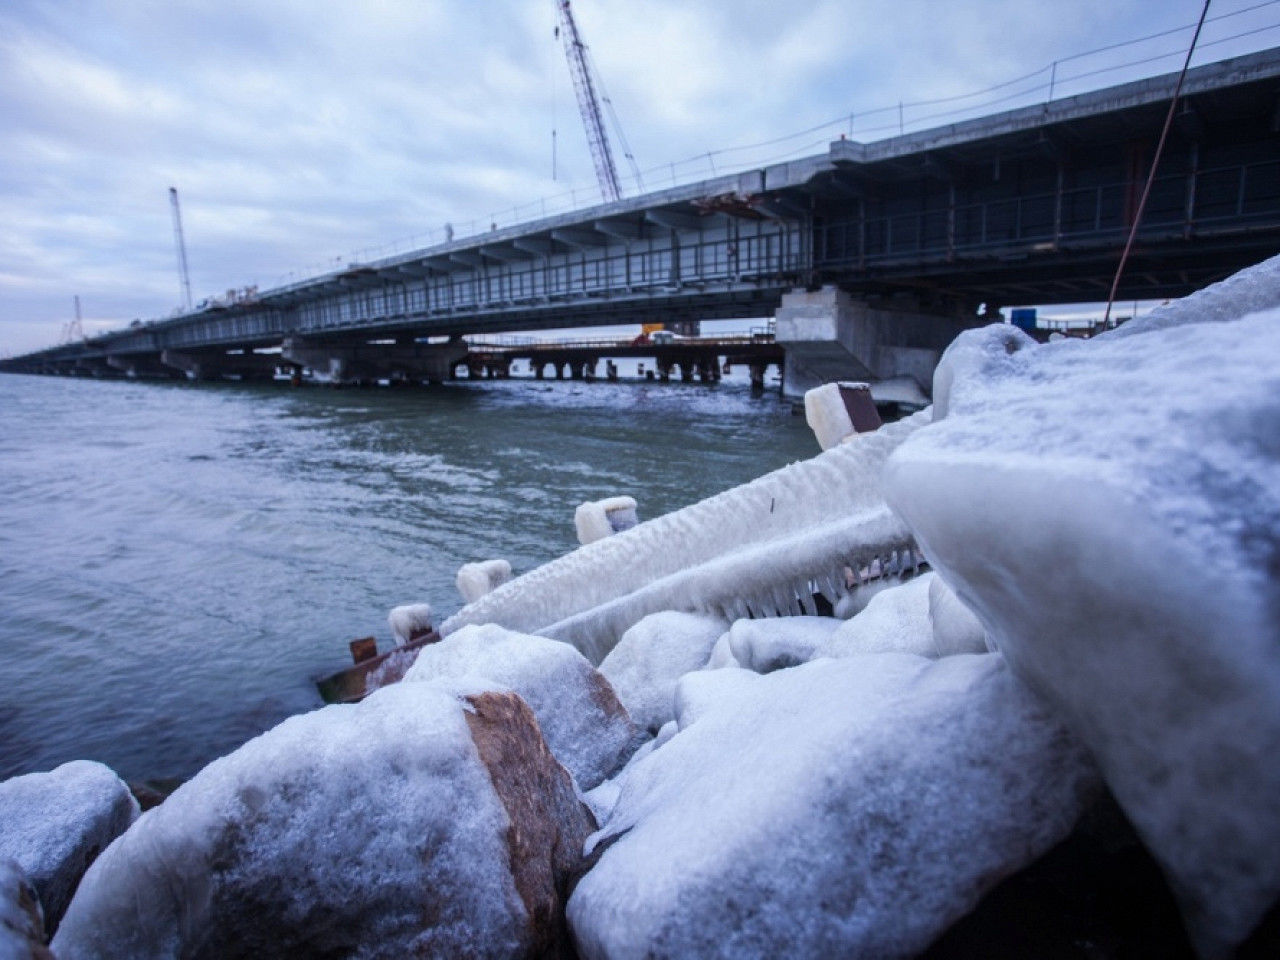 Тонны льда могут разрушить Керченский мост в Крым: замерзшее Азовское море может снести опоры с началом ледохода - СМИ